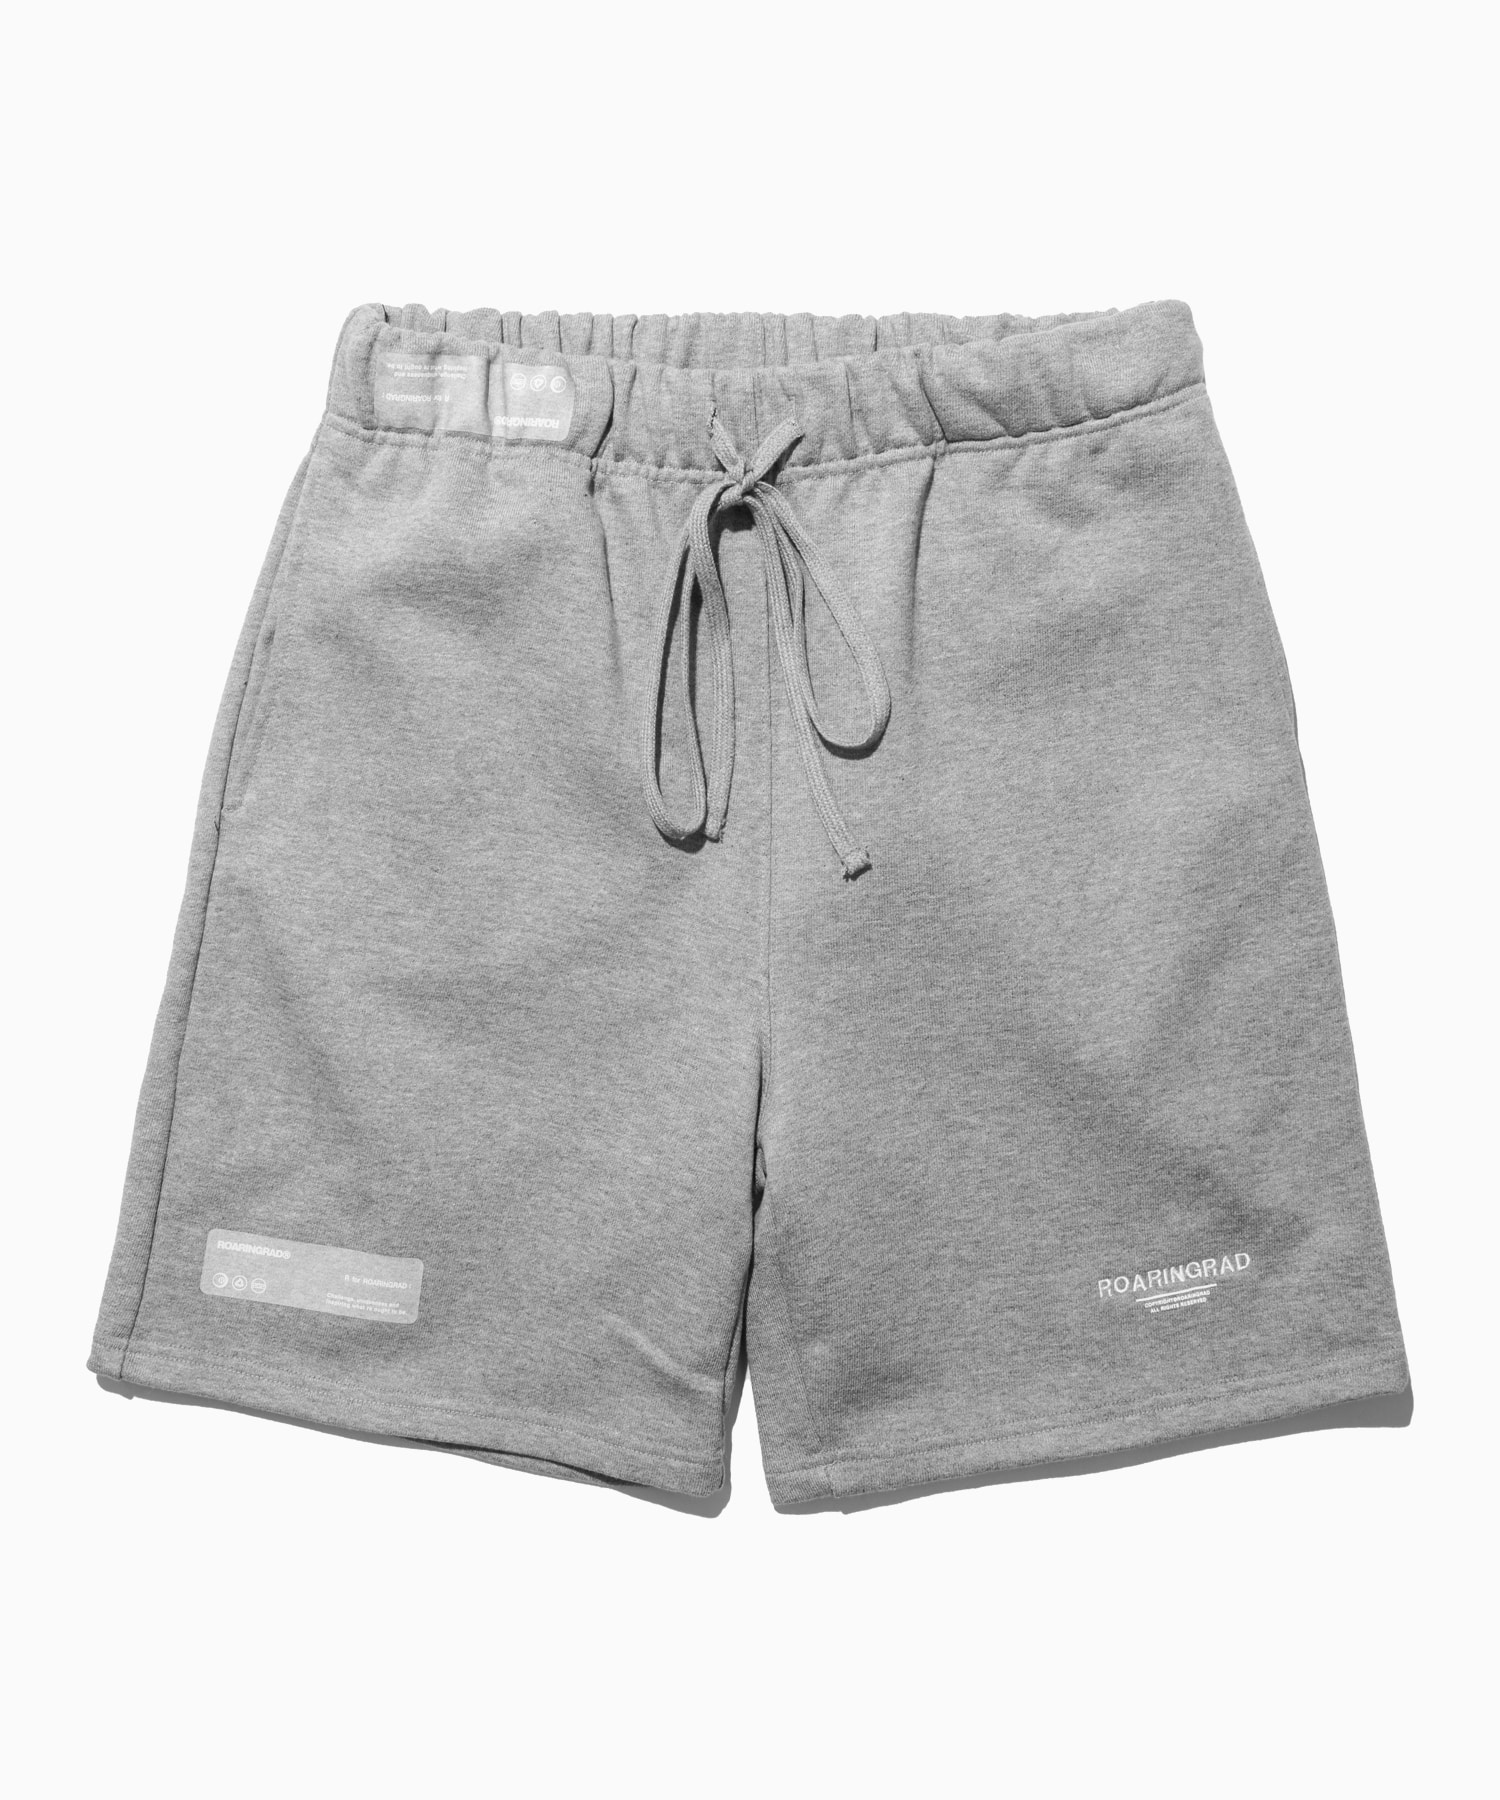 signature sweat short pants gray - 로어링라드(ROARINGRAD)